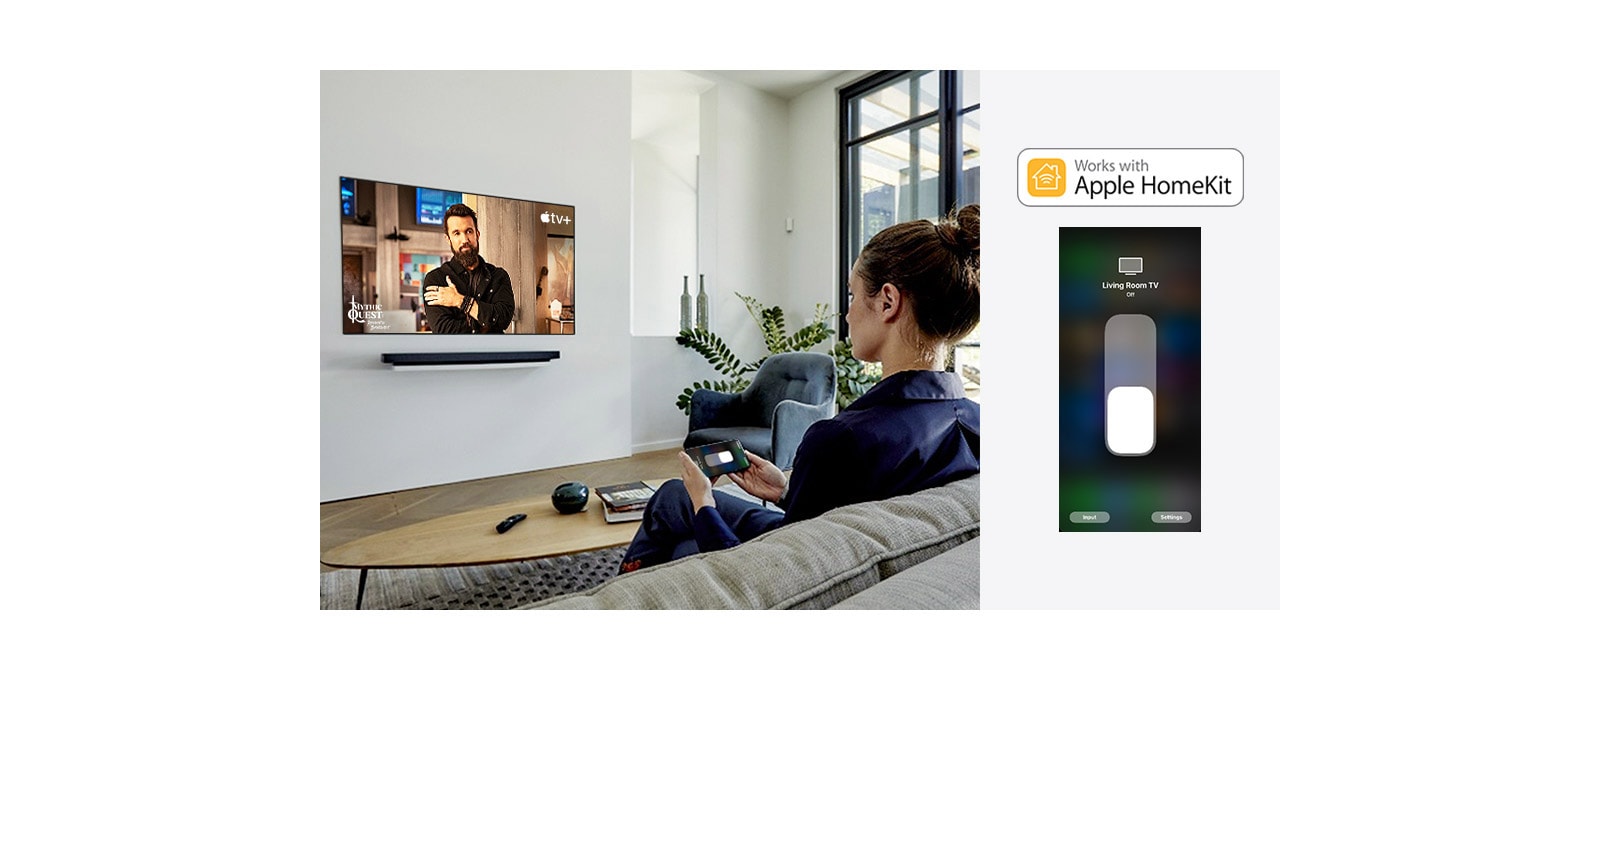 Μια γυναίκα στον καναπέ παρακολουθεί ένα πρόγραμμα στην Apple TV +, χρησιμοποιώντας το Apple Homekit στο κινητό της (μετακινήστε τη διαφάνεια)